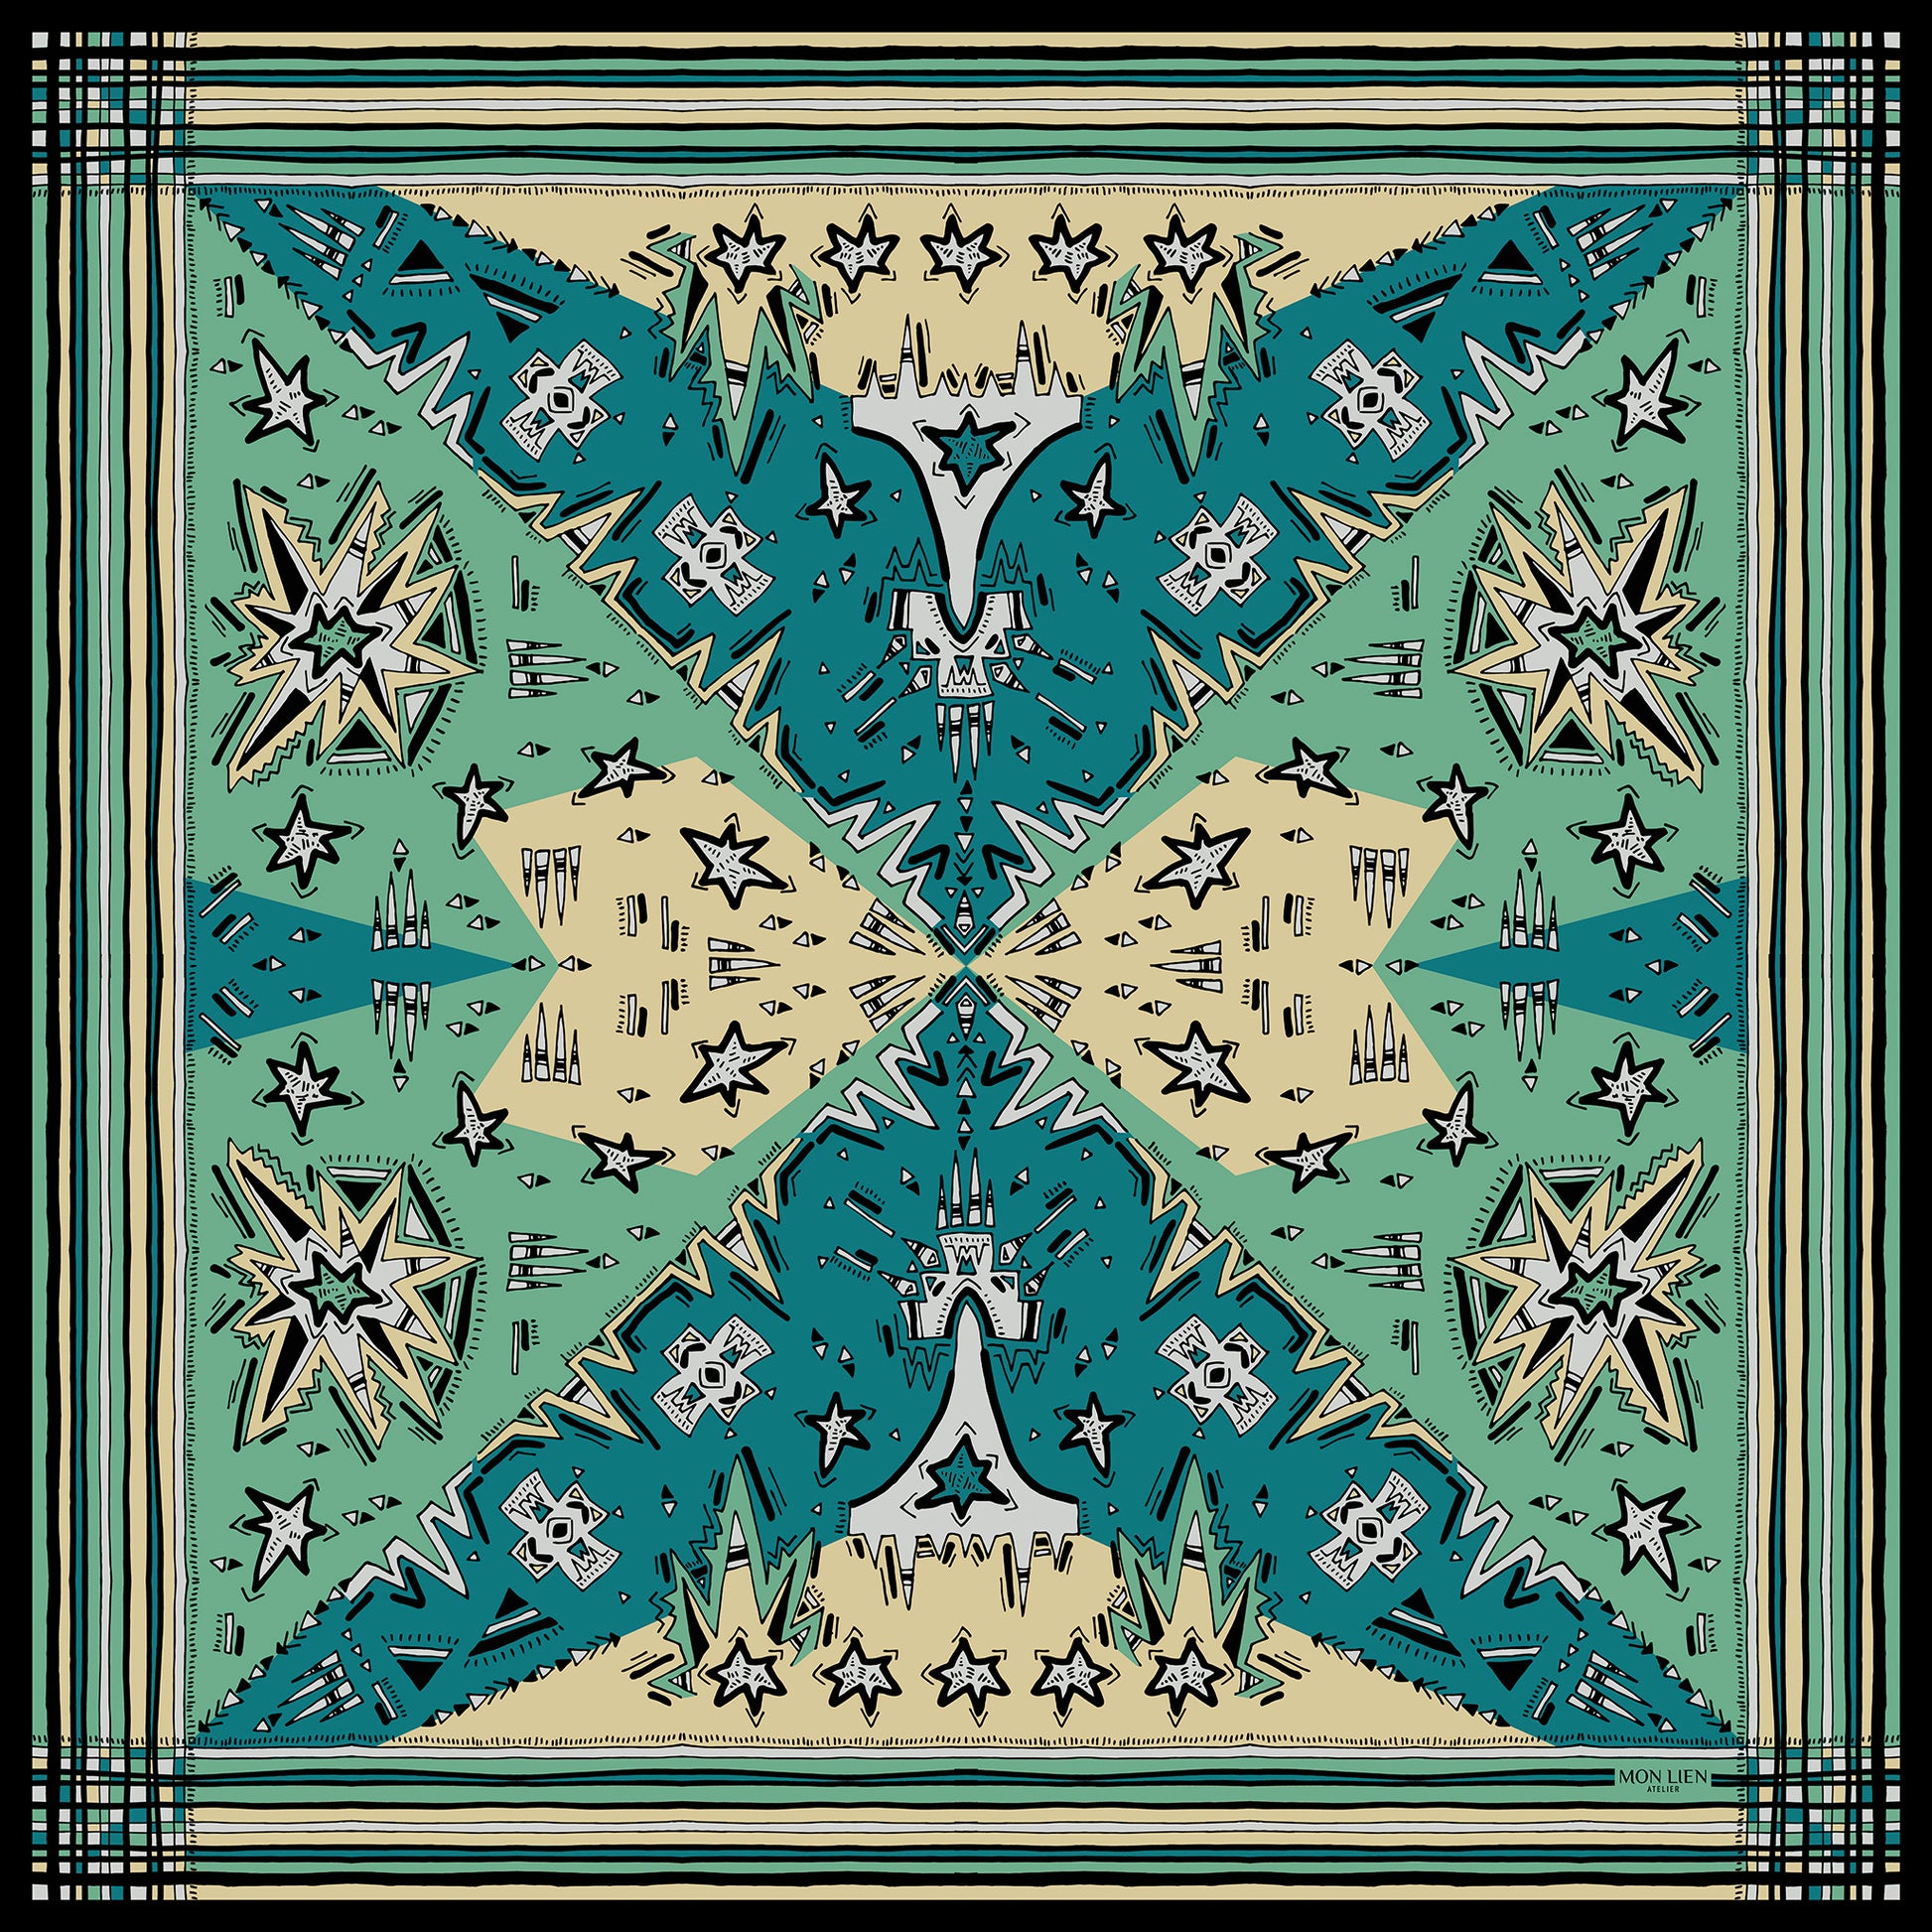 foulard carré in seta vista intera con disegno grafico di stelle e motivi con bordo a righe colore turchese ottanio avorio beige